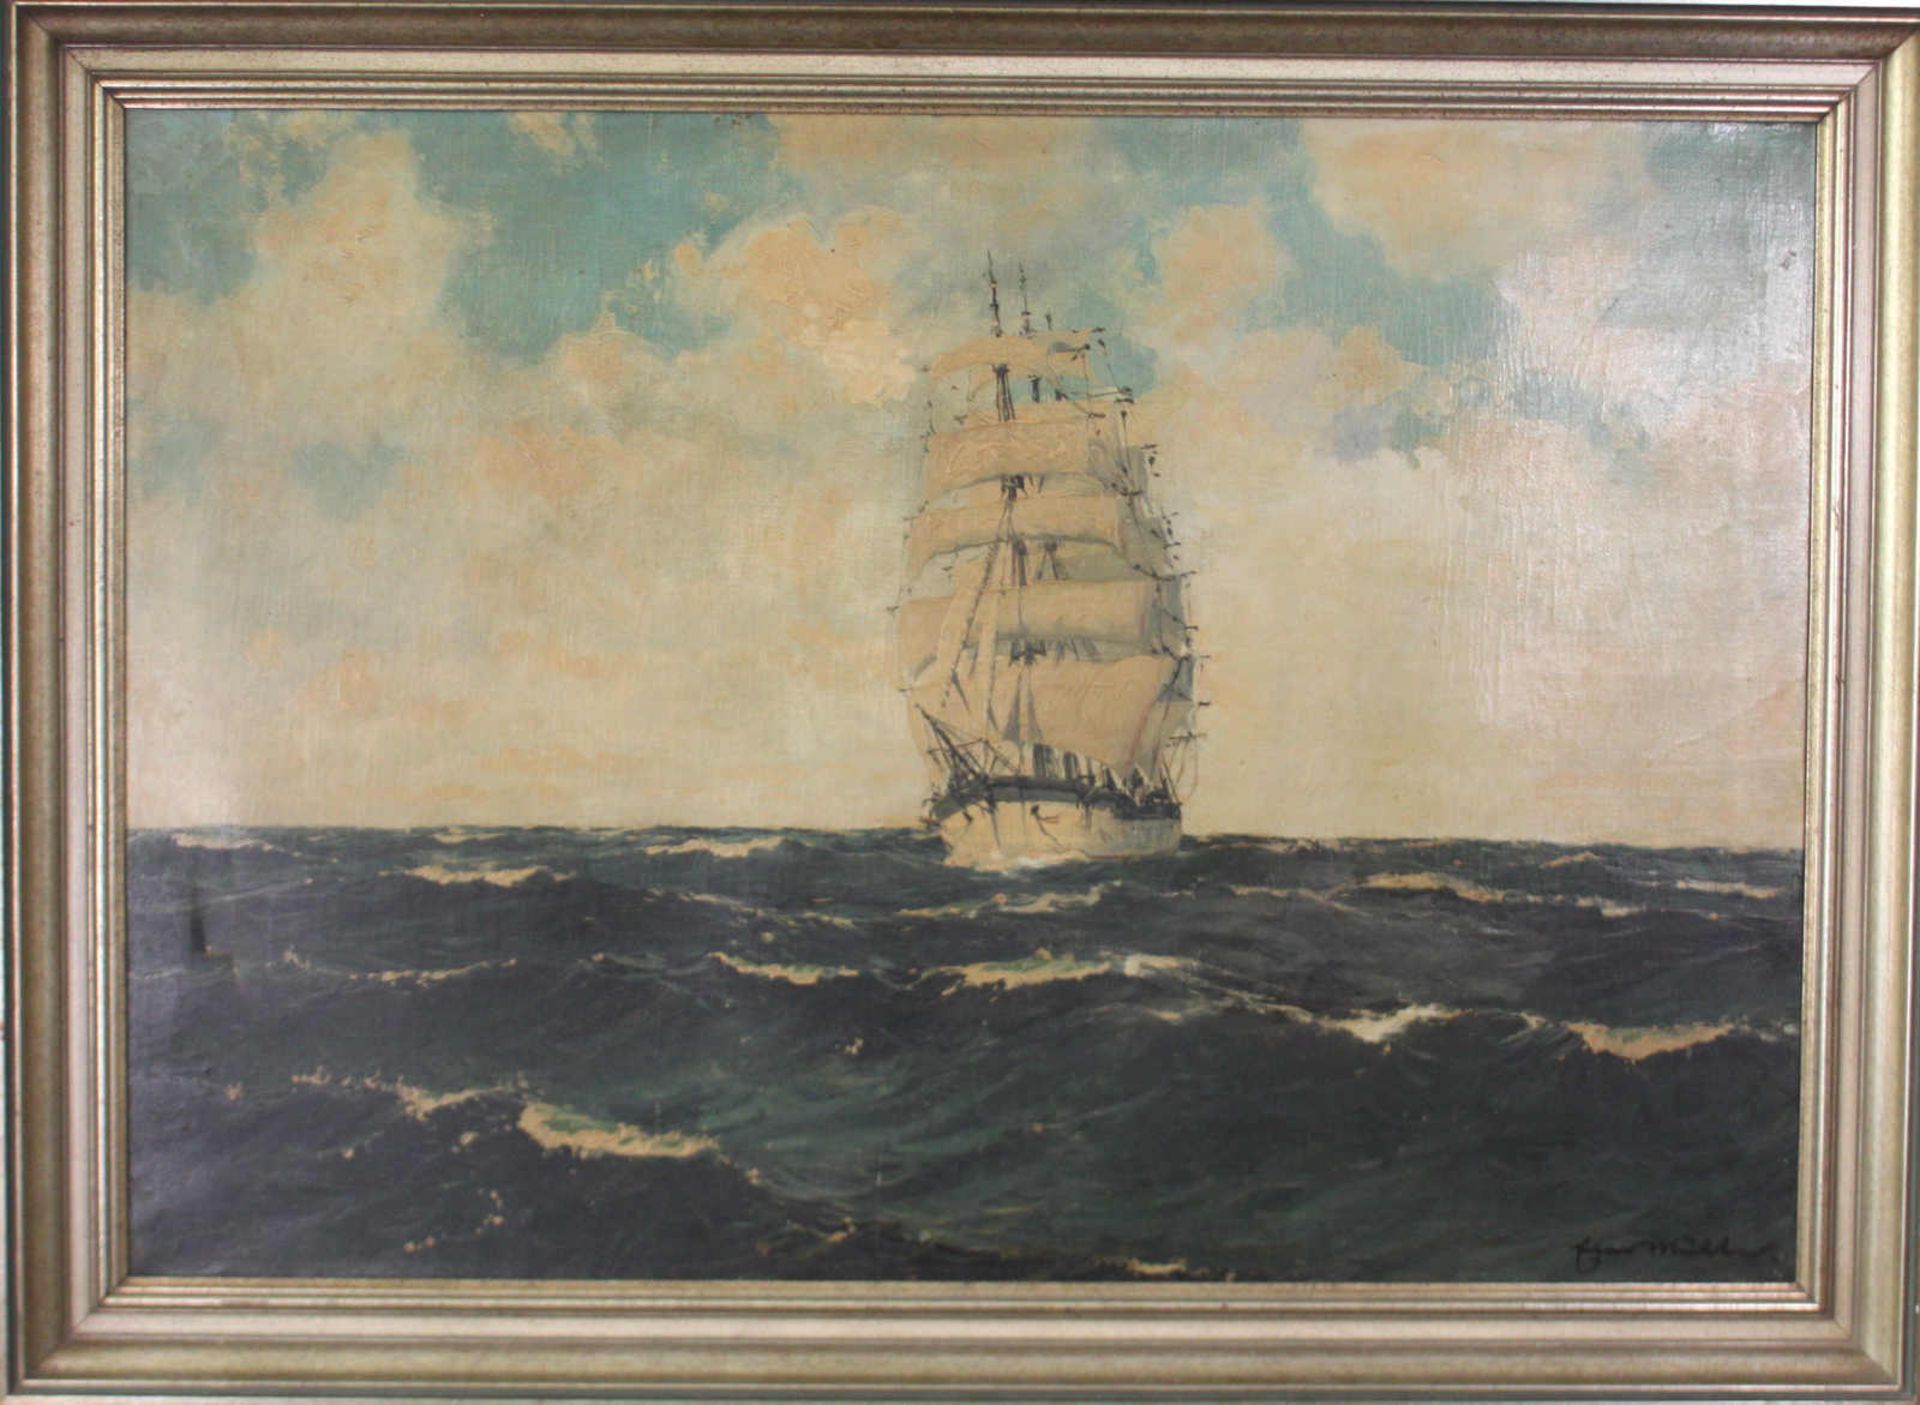 Segelboot auf hoher See. Öl auf Leinwand, unten rechts ungedeutet signiert, Datierung um 1900, - Image 2 of 4